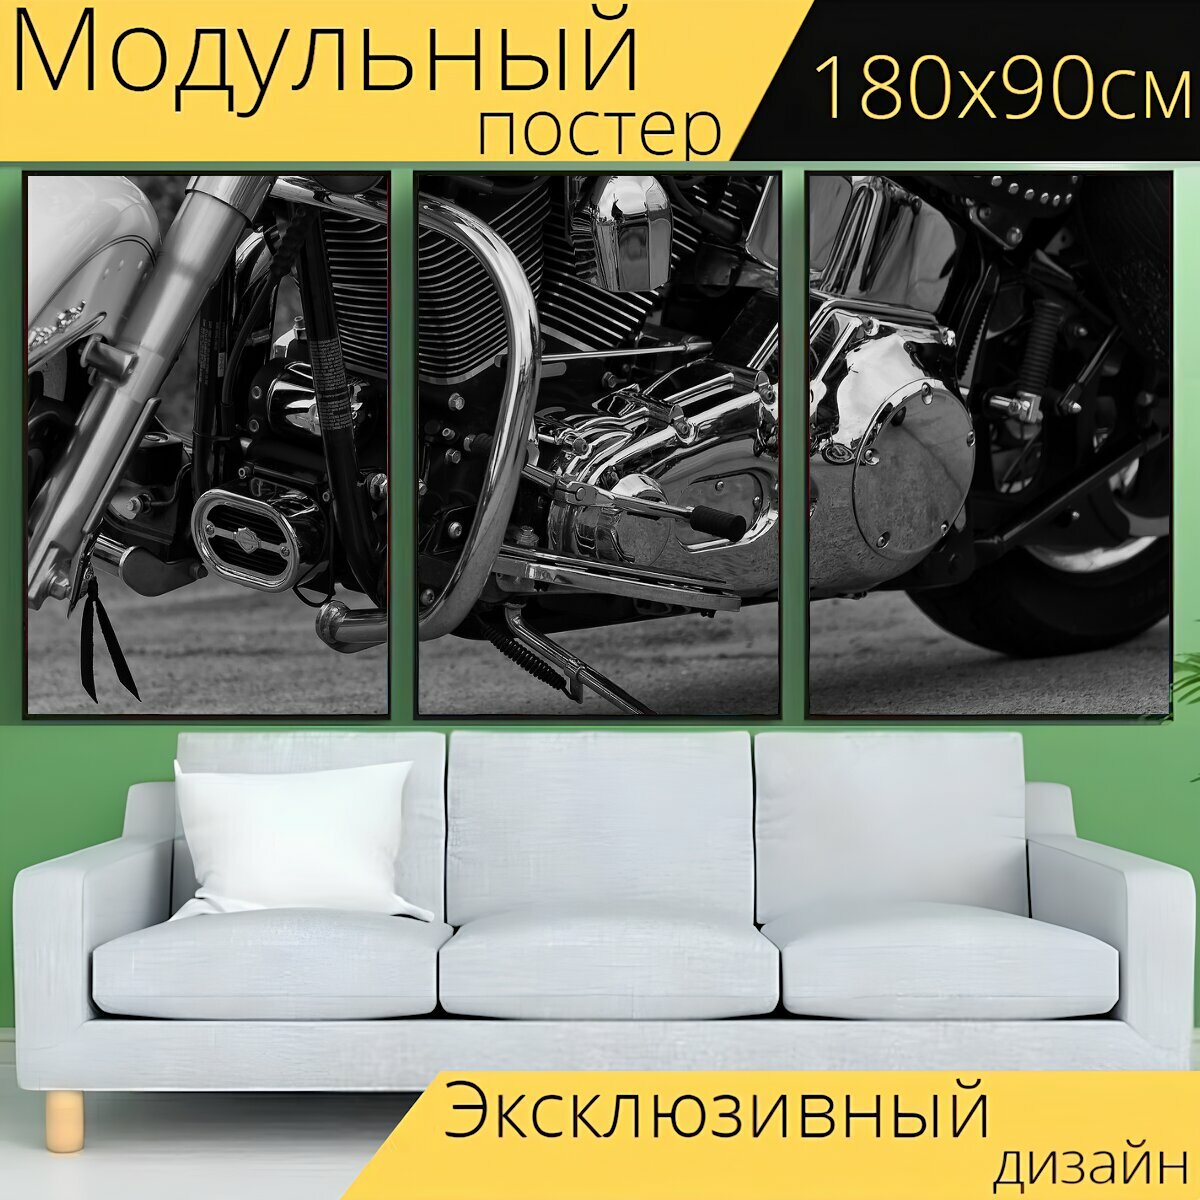 Модульный постер "Мотоцикл, велосипед, харлей" 180 x 90 см. для интерьера